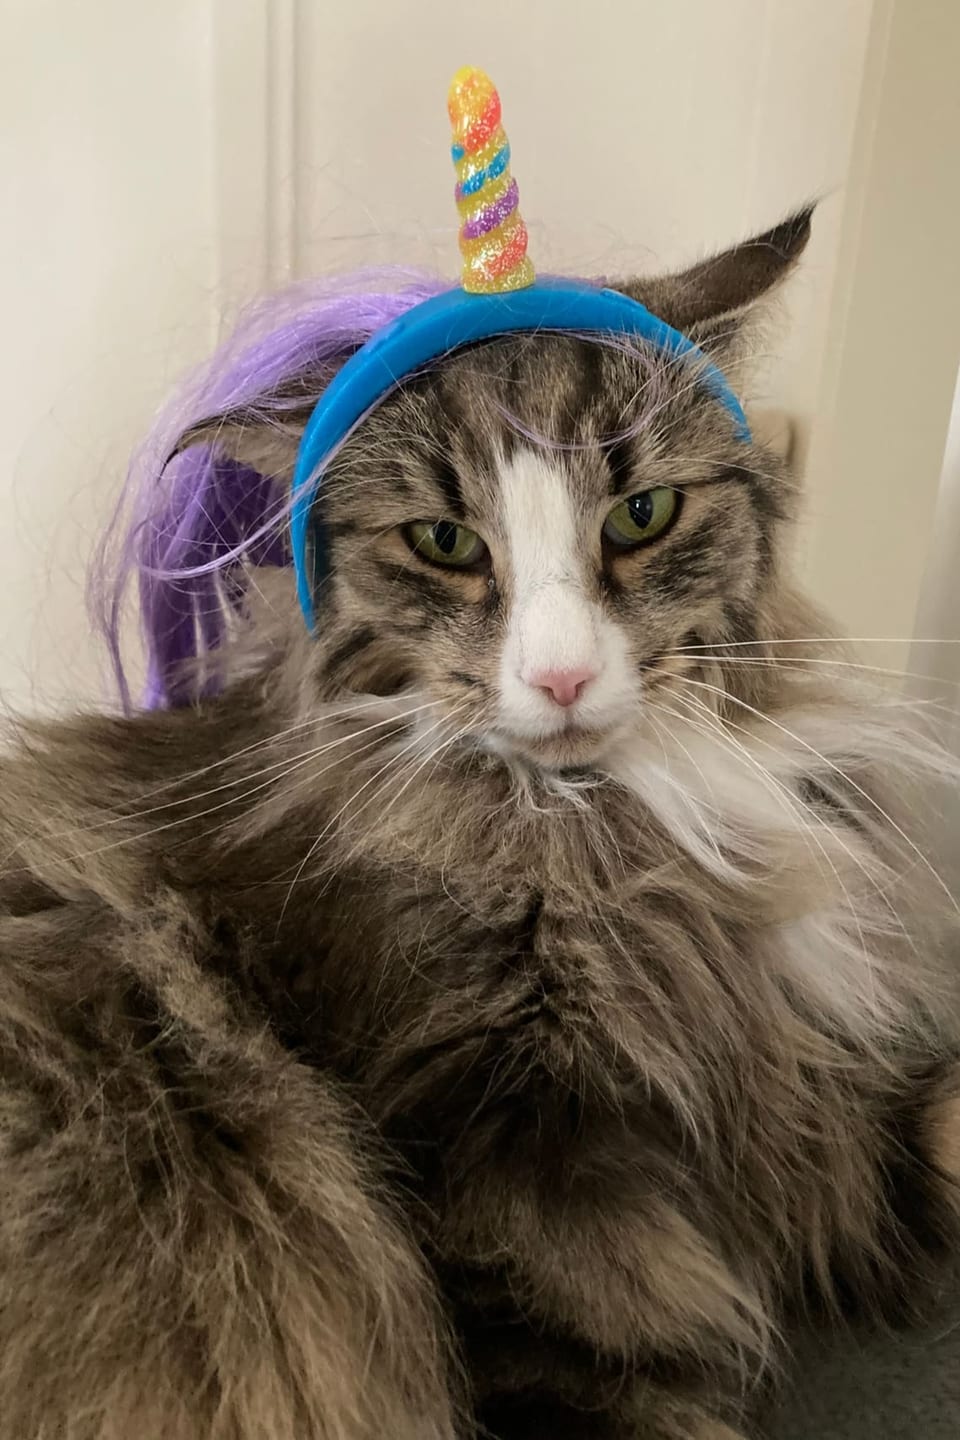 Katze mit farbigem Einhorn auf dem Kopf.